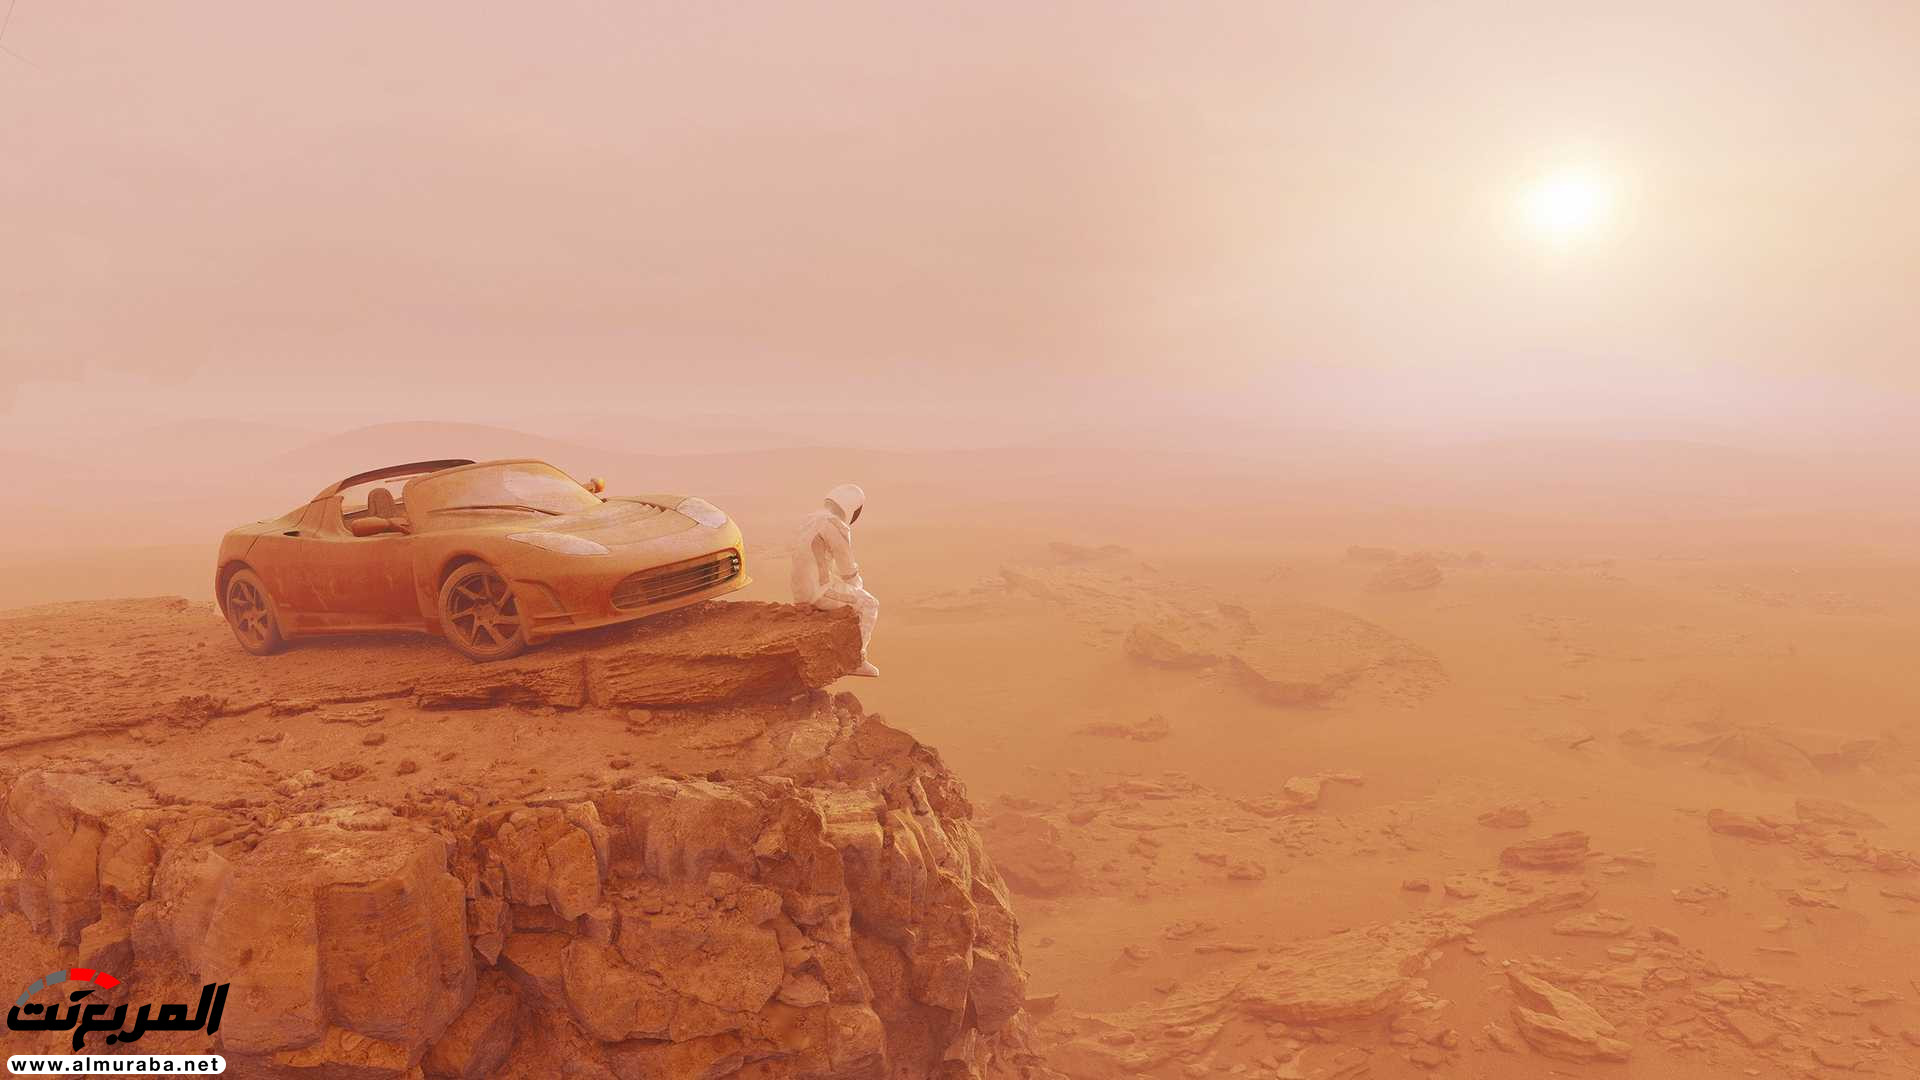 تيسلا رودستر وصلت إلى المريخ في صور تخيلية 16